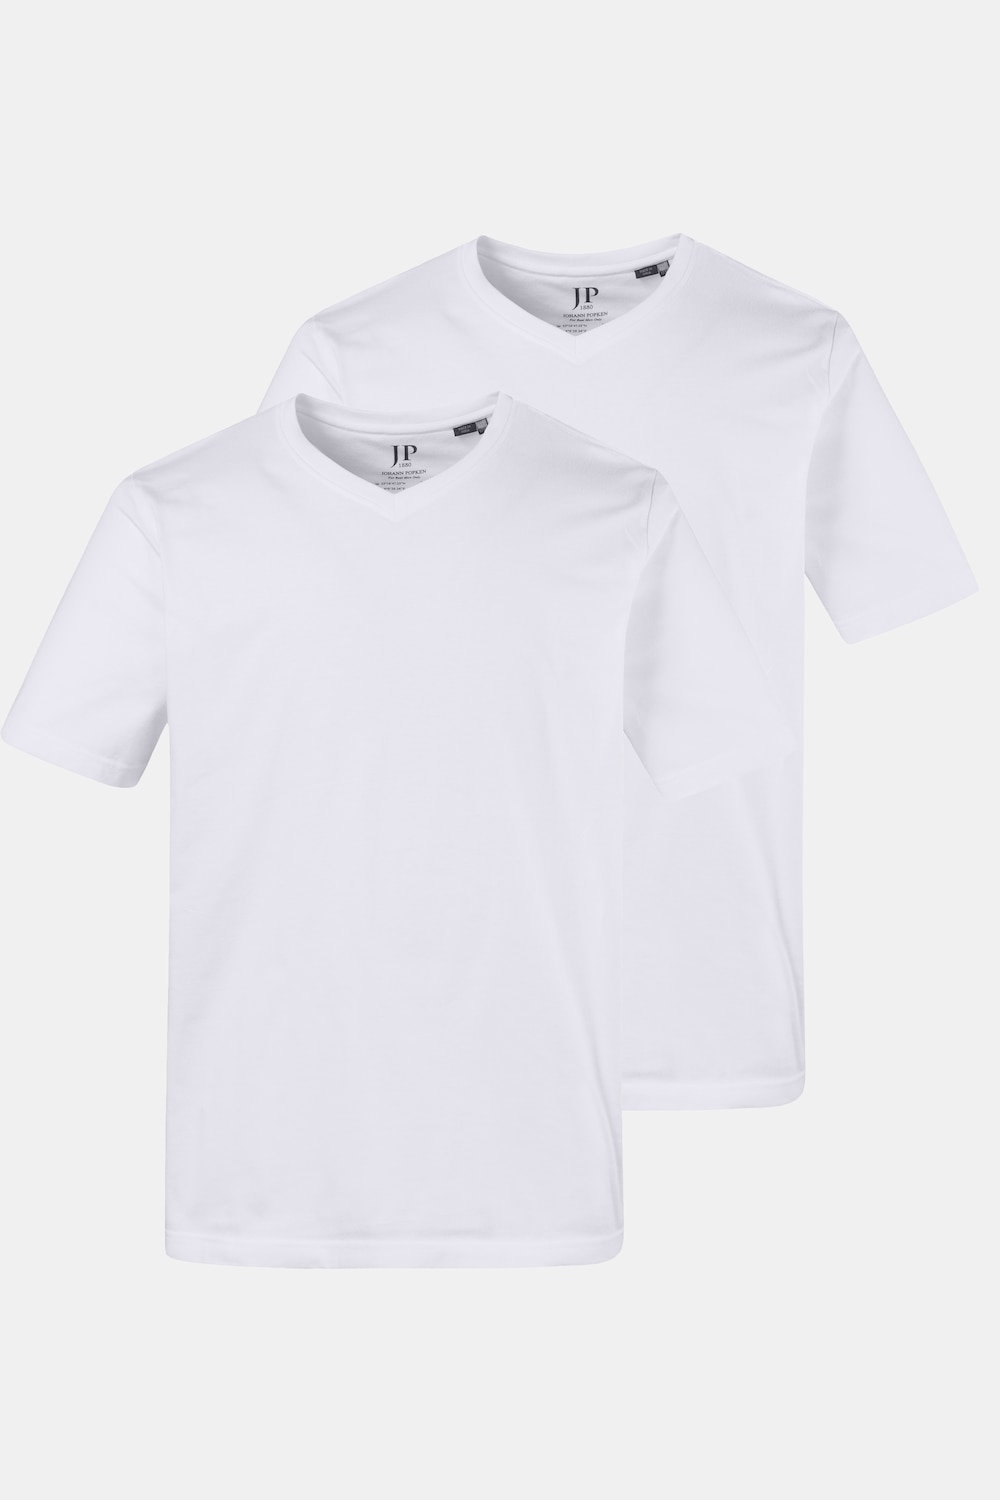 Grote Maten T-shirts, Heren, wit, Maat: 4XL, Katoen, JP1880